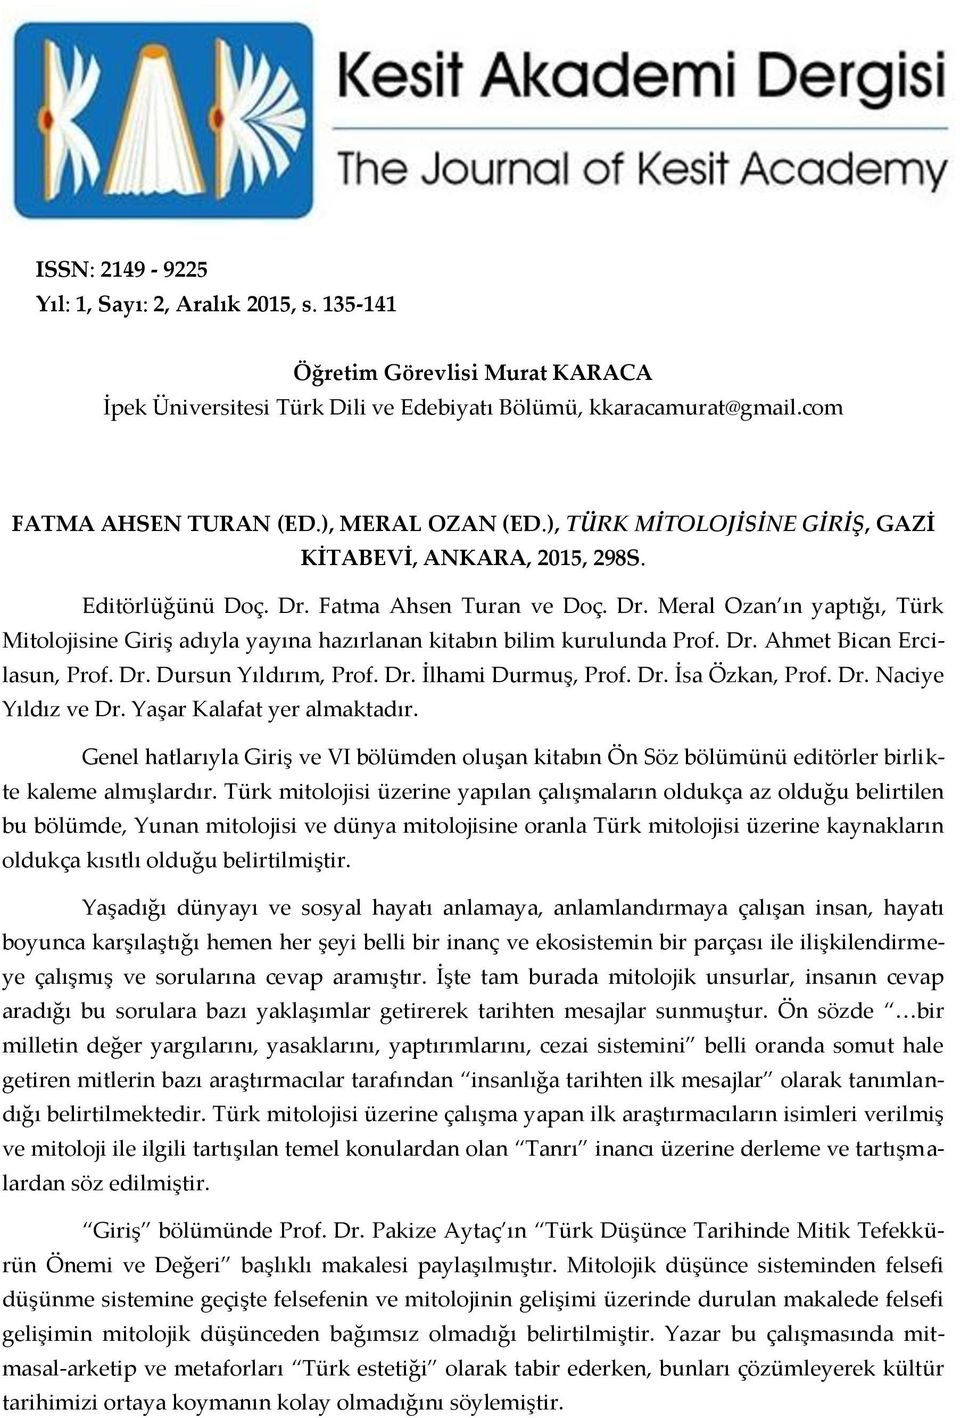 Dr. Ahmet Bican Ercilasun, Prof. Dr. Dursun Yıldırım, Prof. Dr. İlhami Durmuş, Prof. Dr. İsa Özkan, Prof. Dr. Naciye Yıldız ve Dr. Yaşar Kalafat yer almaktadır.